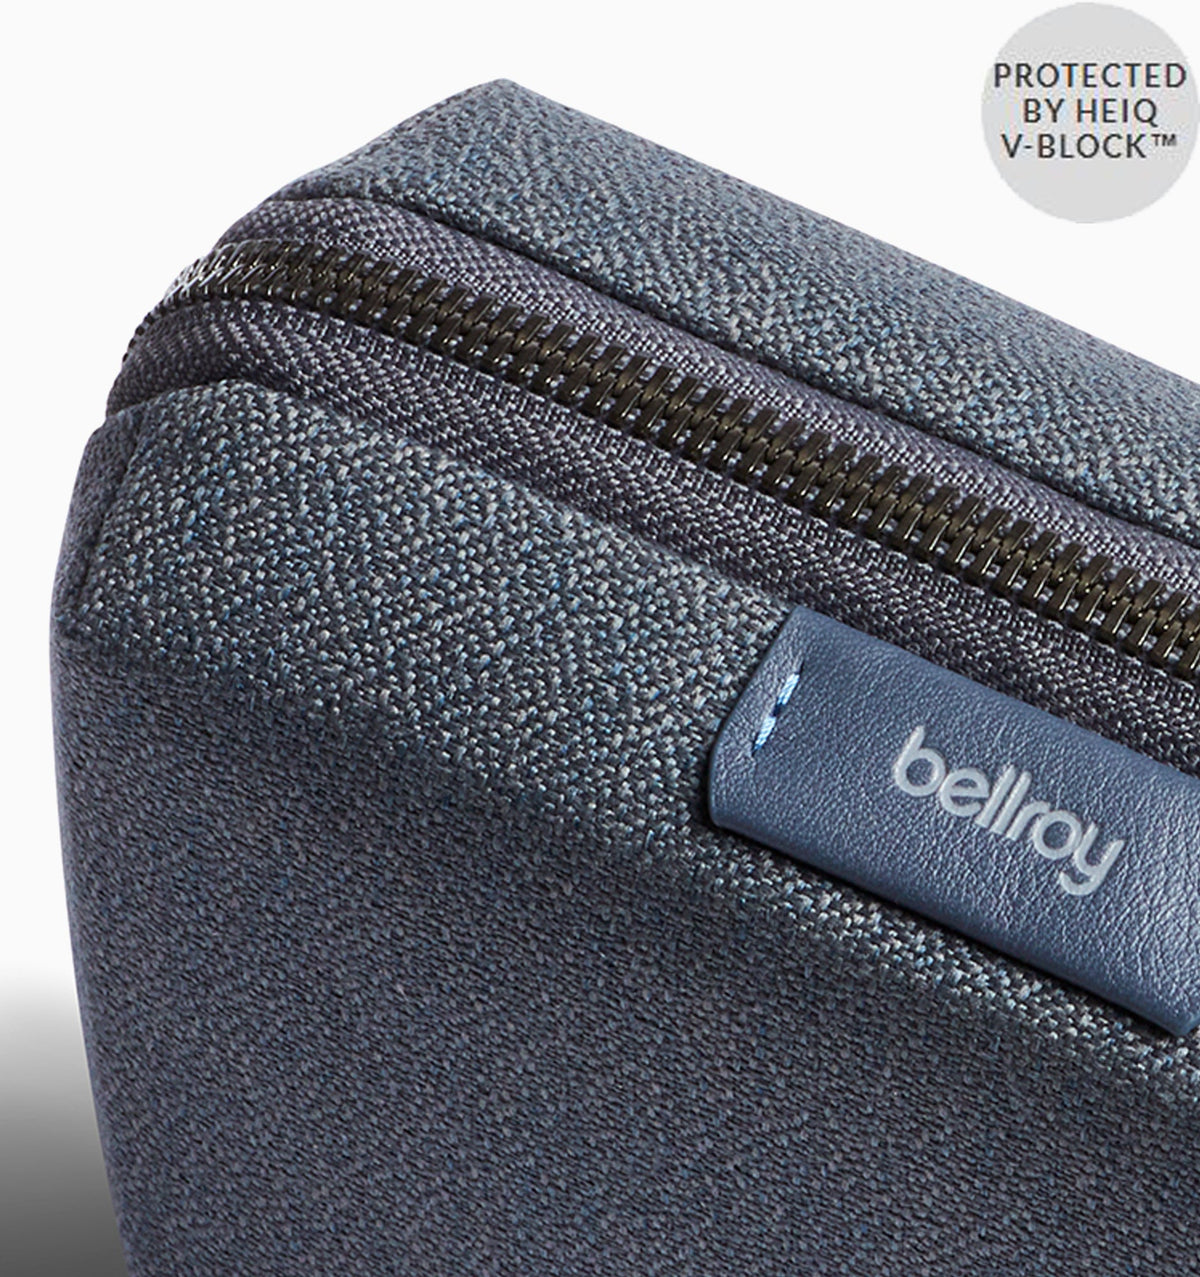 Bellroy Tech Kit Compact - Basalt